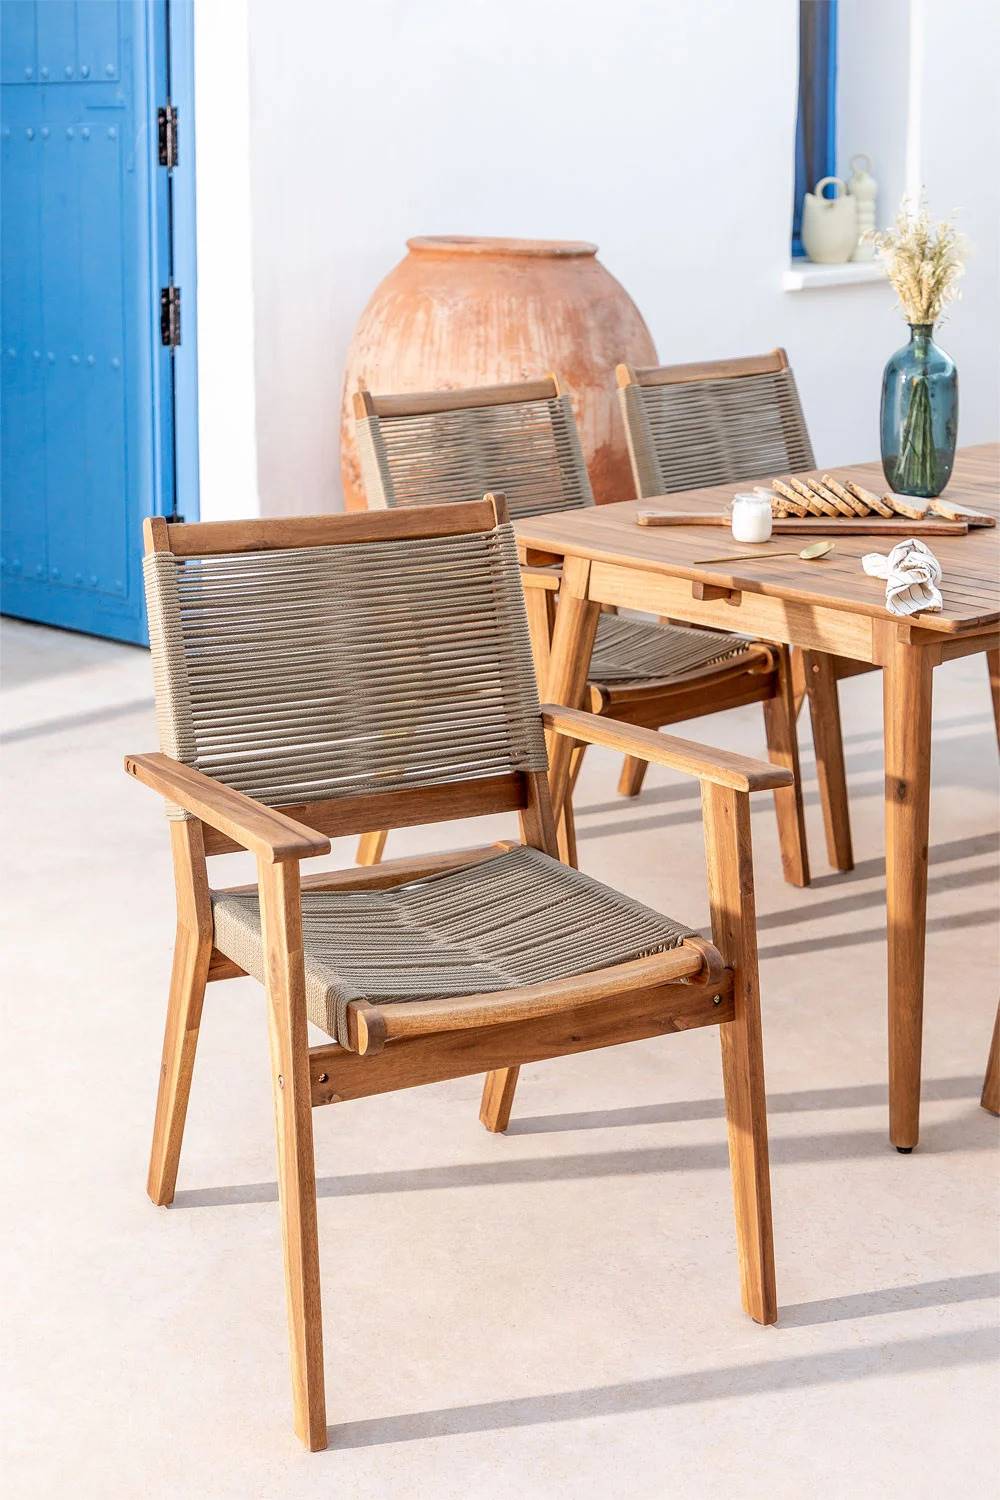 Rebajas muebles de jardín de Sklum: silla apilable de madera y asiento de cuerda trenzada 